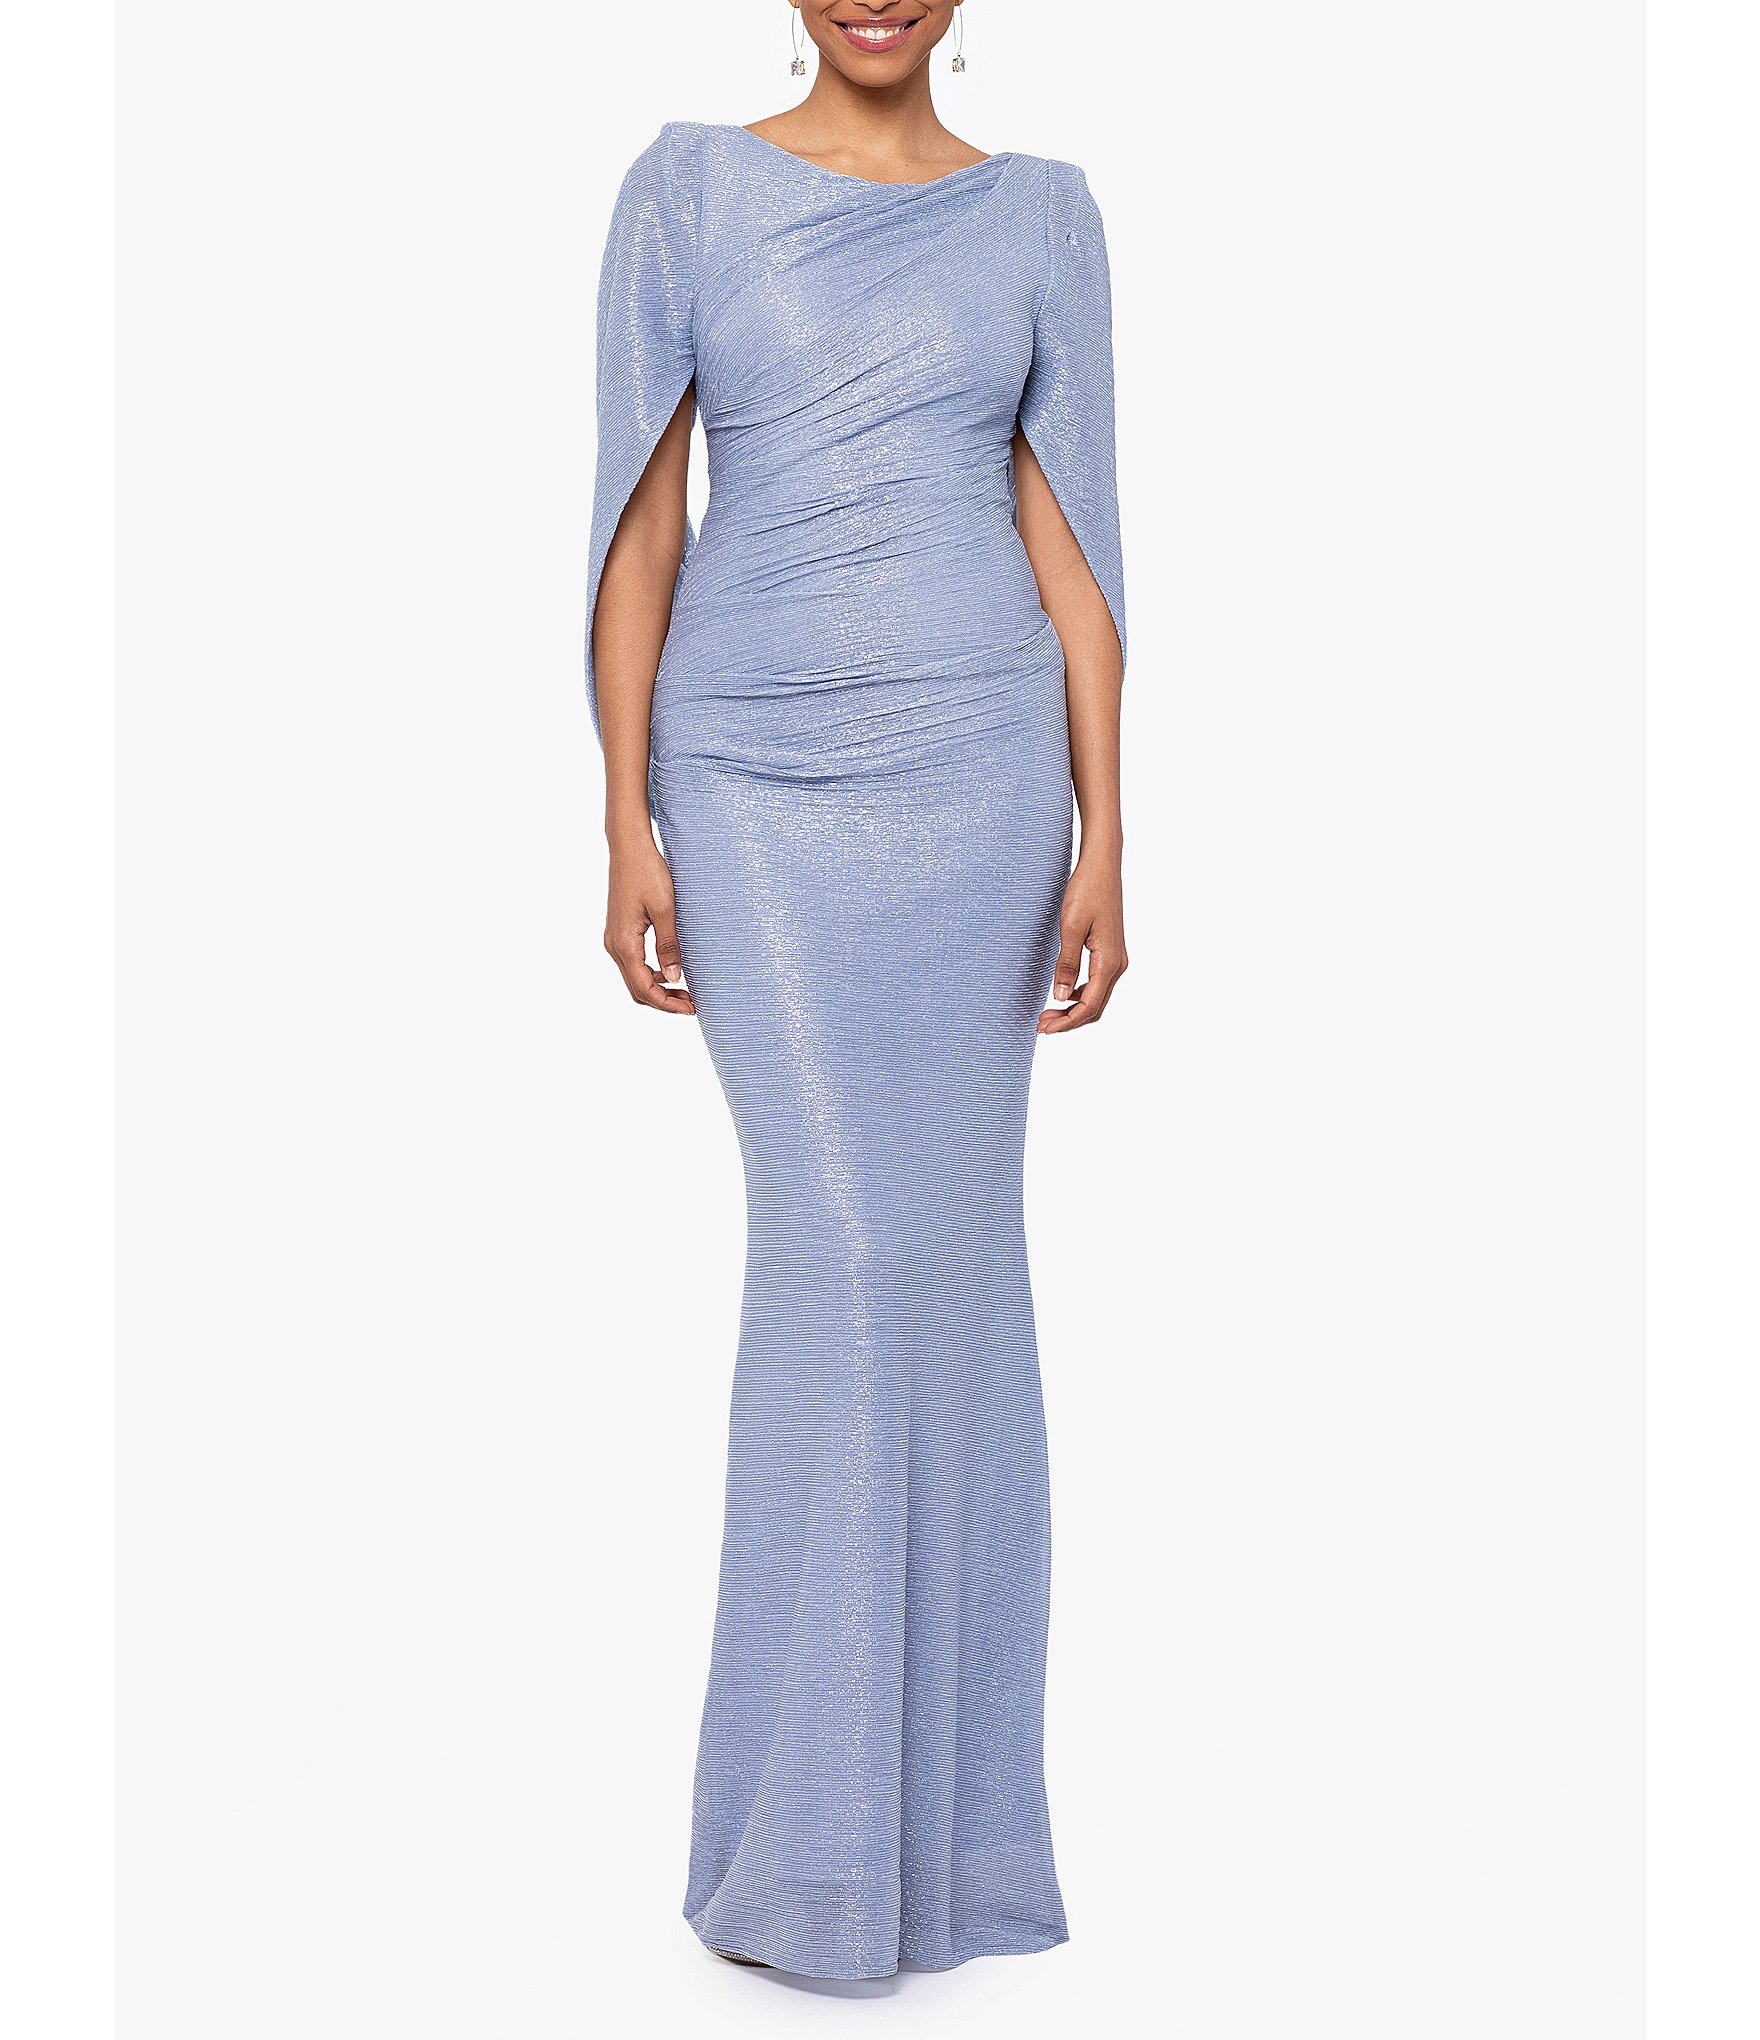 drape dress: Women's Formal Dresses & Evening Gowns | Dillard's